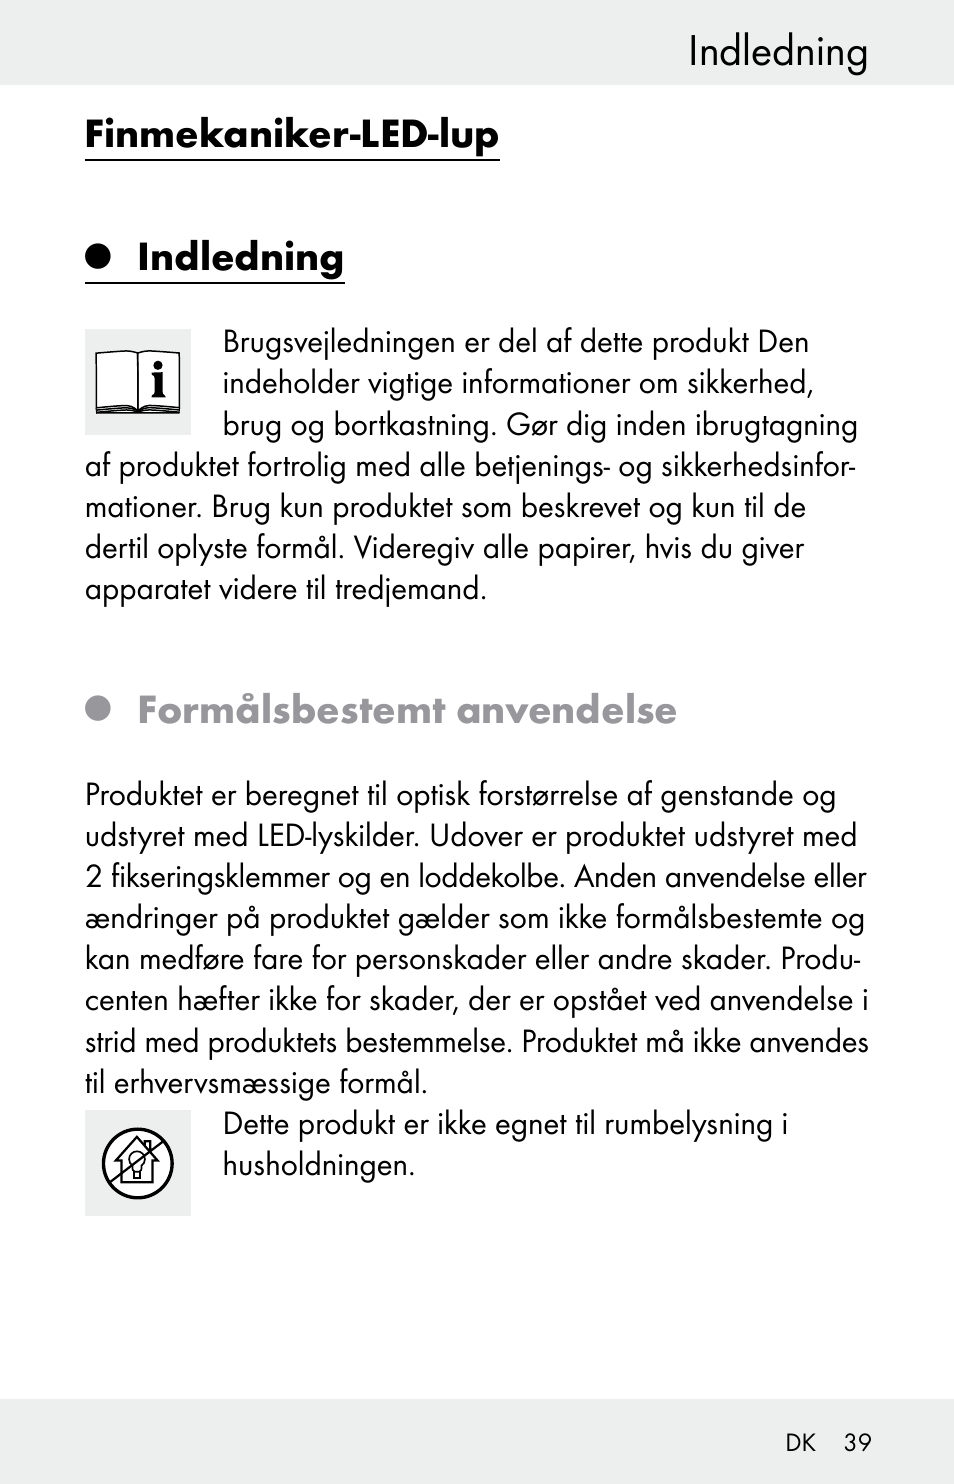 Indledning, Finmekaniker-led-lup, Formålsbestemt anvendelse | Powerfix  Z30225 User Manual | Page 39 / 84 | Original mode